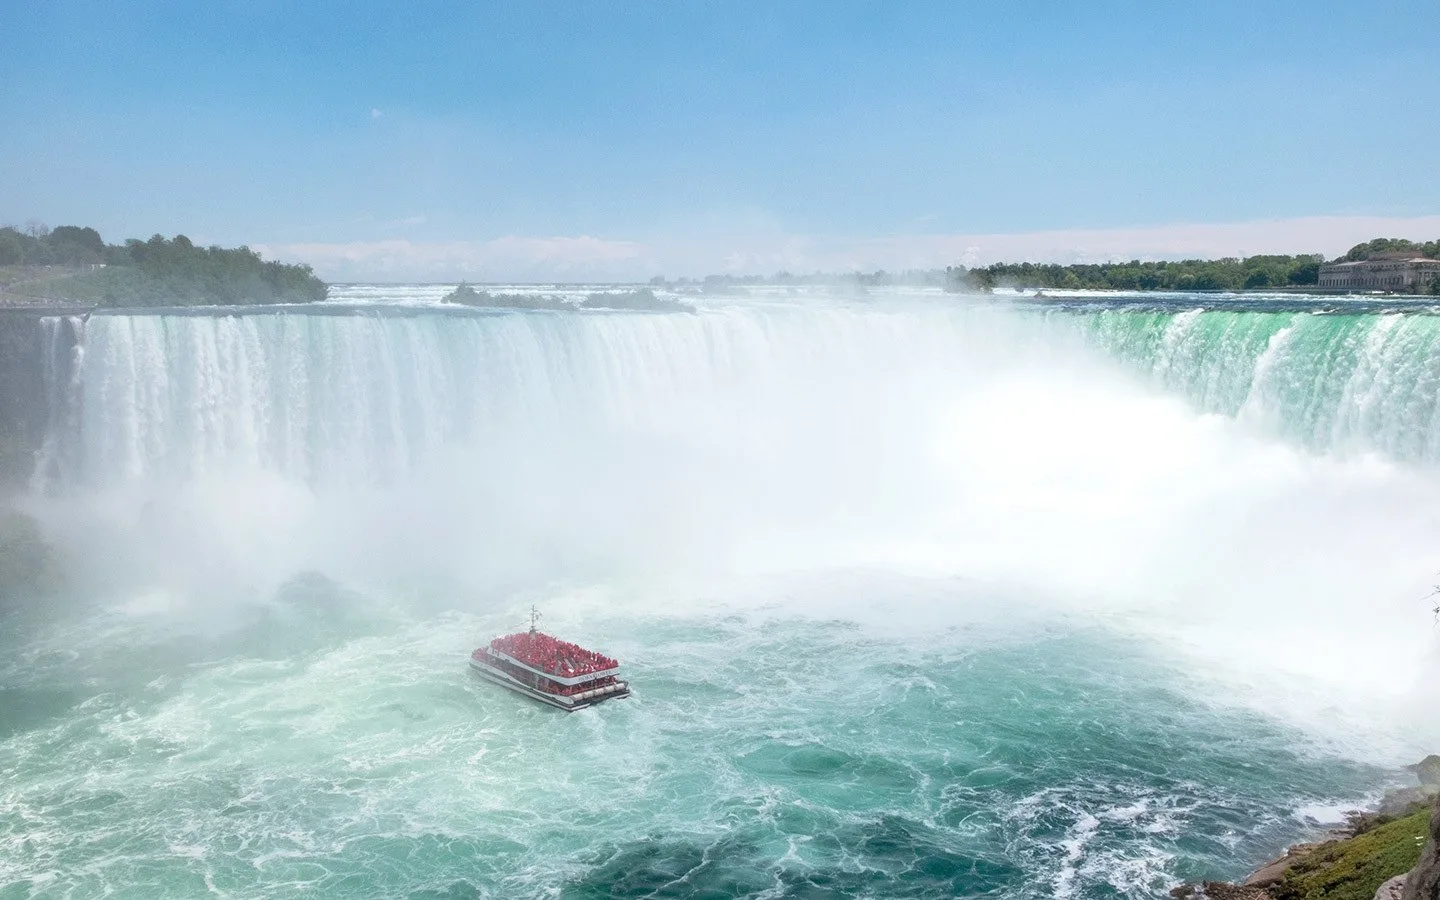 Horseshoe Falls at Niagara Falls in Canada